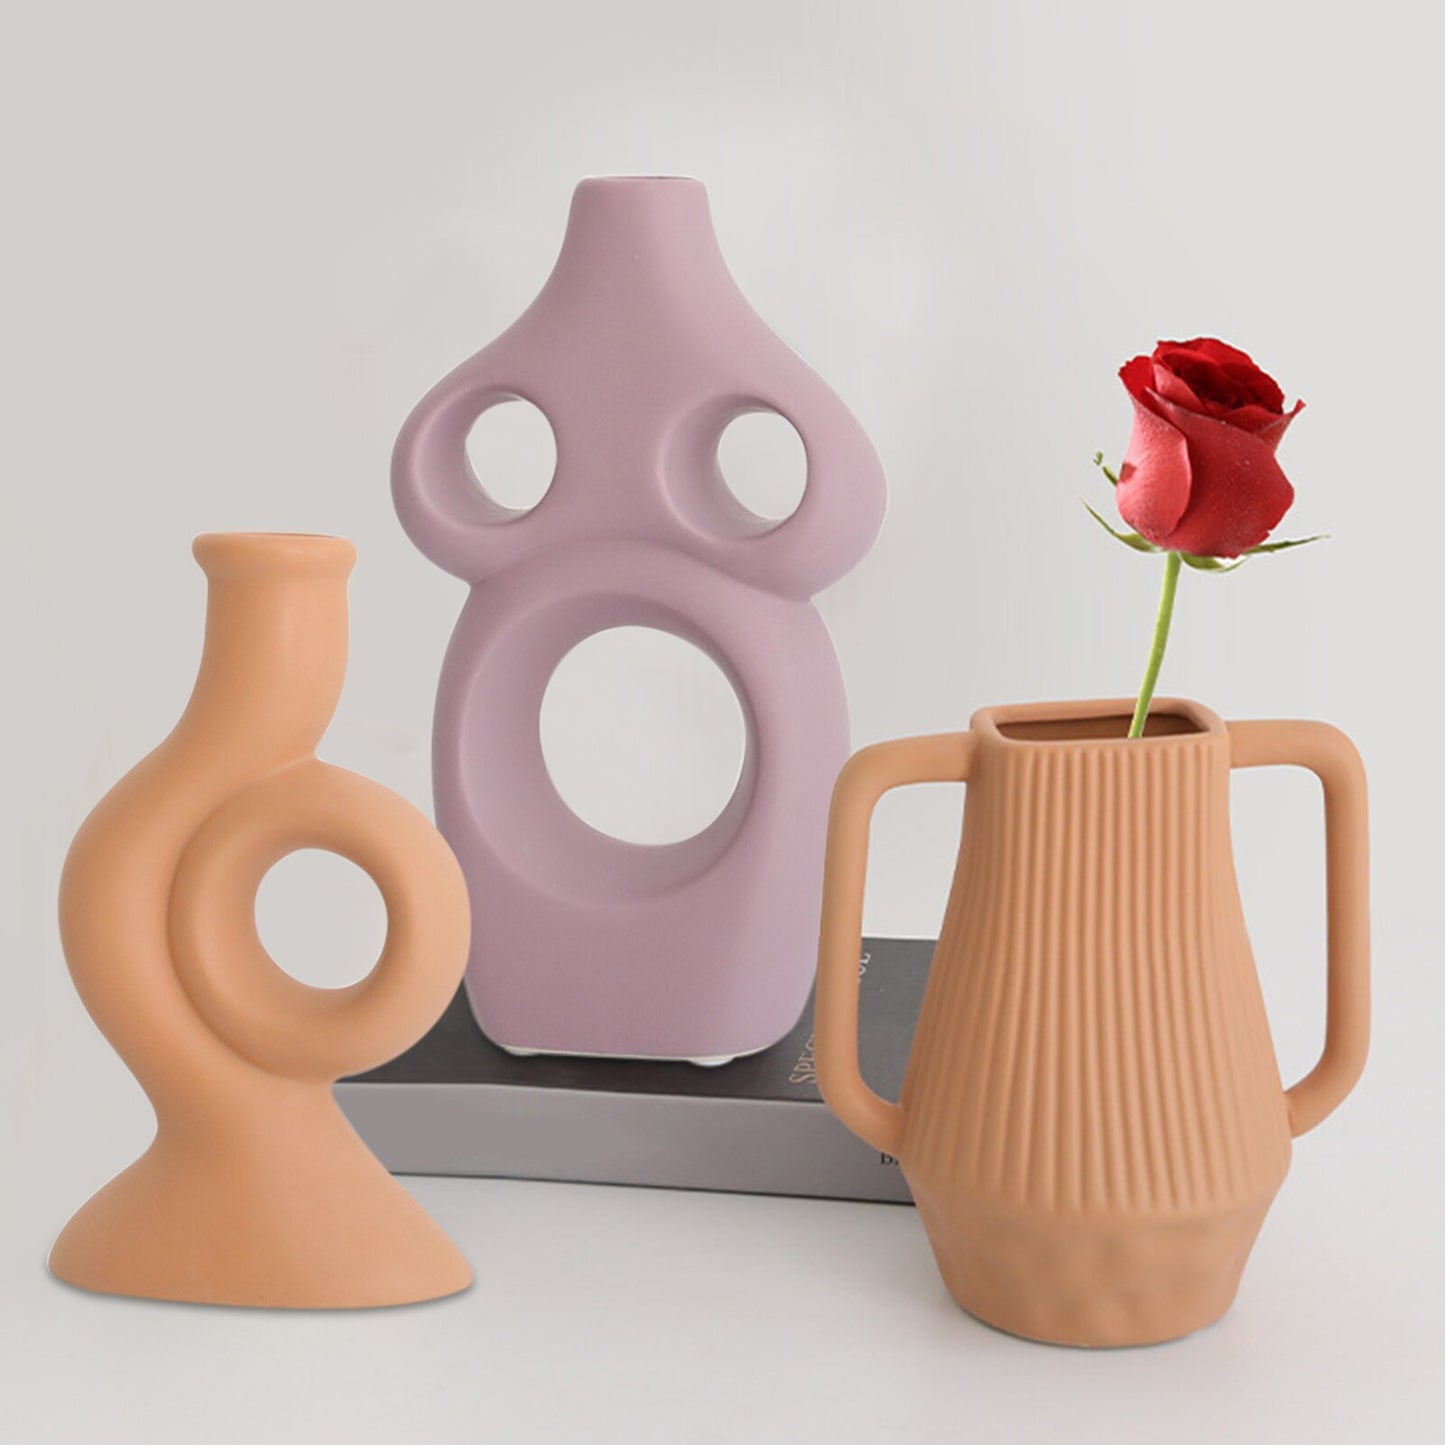 Nordic Morandi Shaped Ceramic Vases Moderne Vases